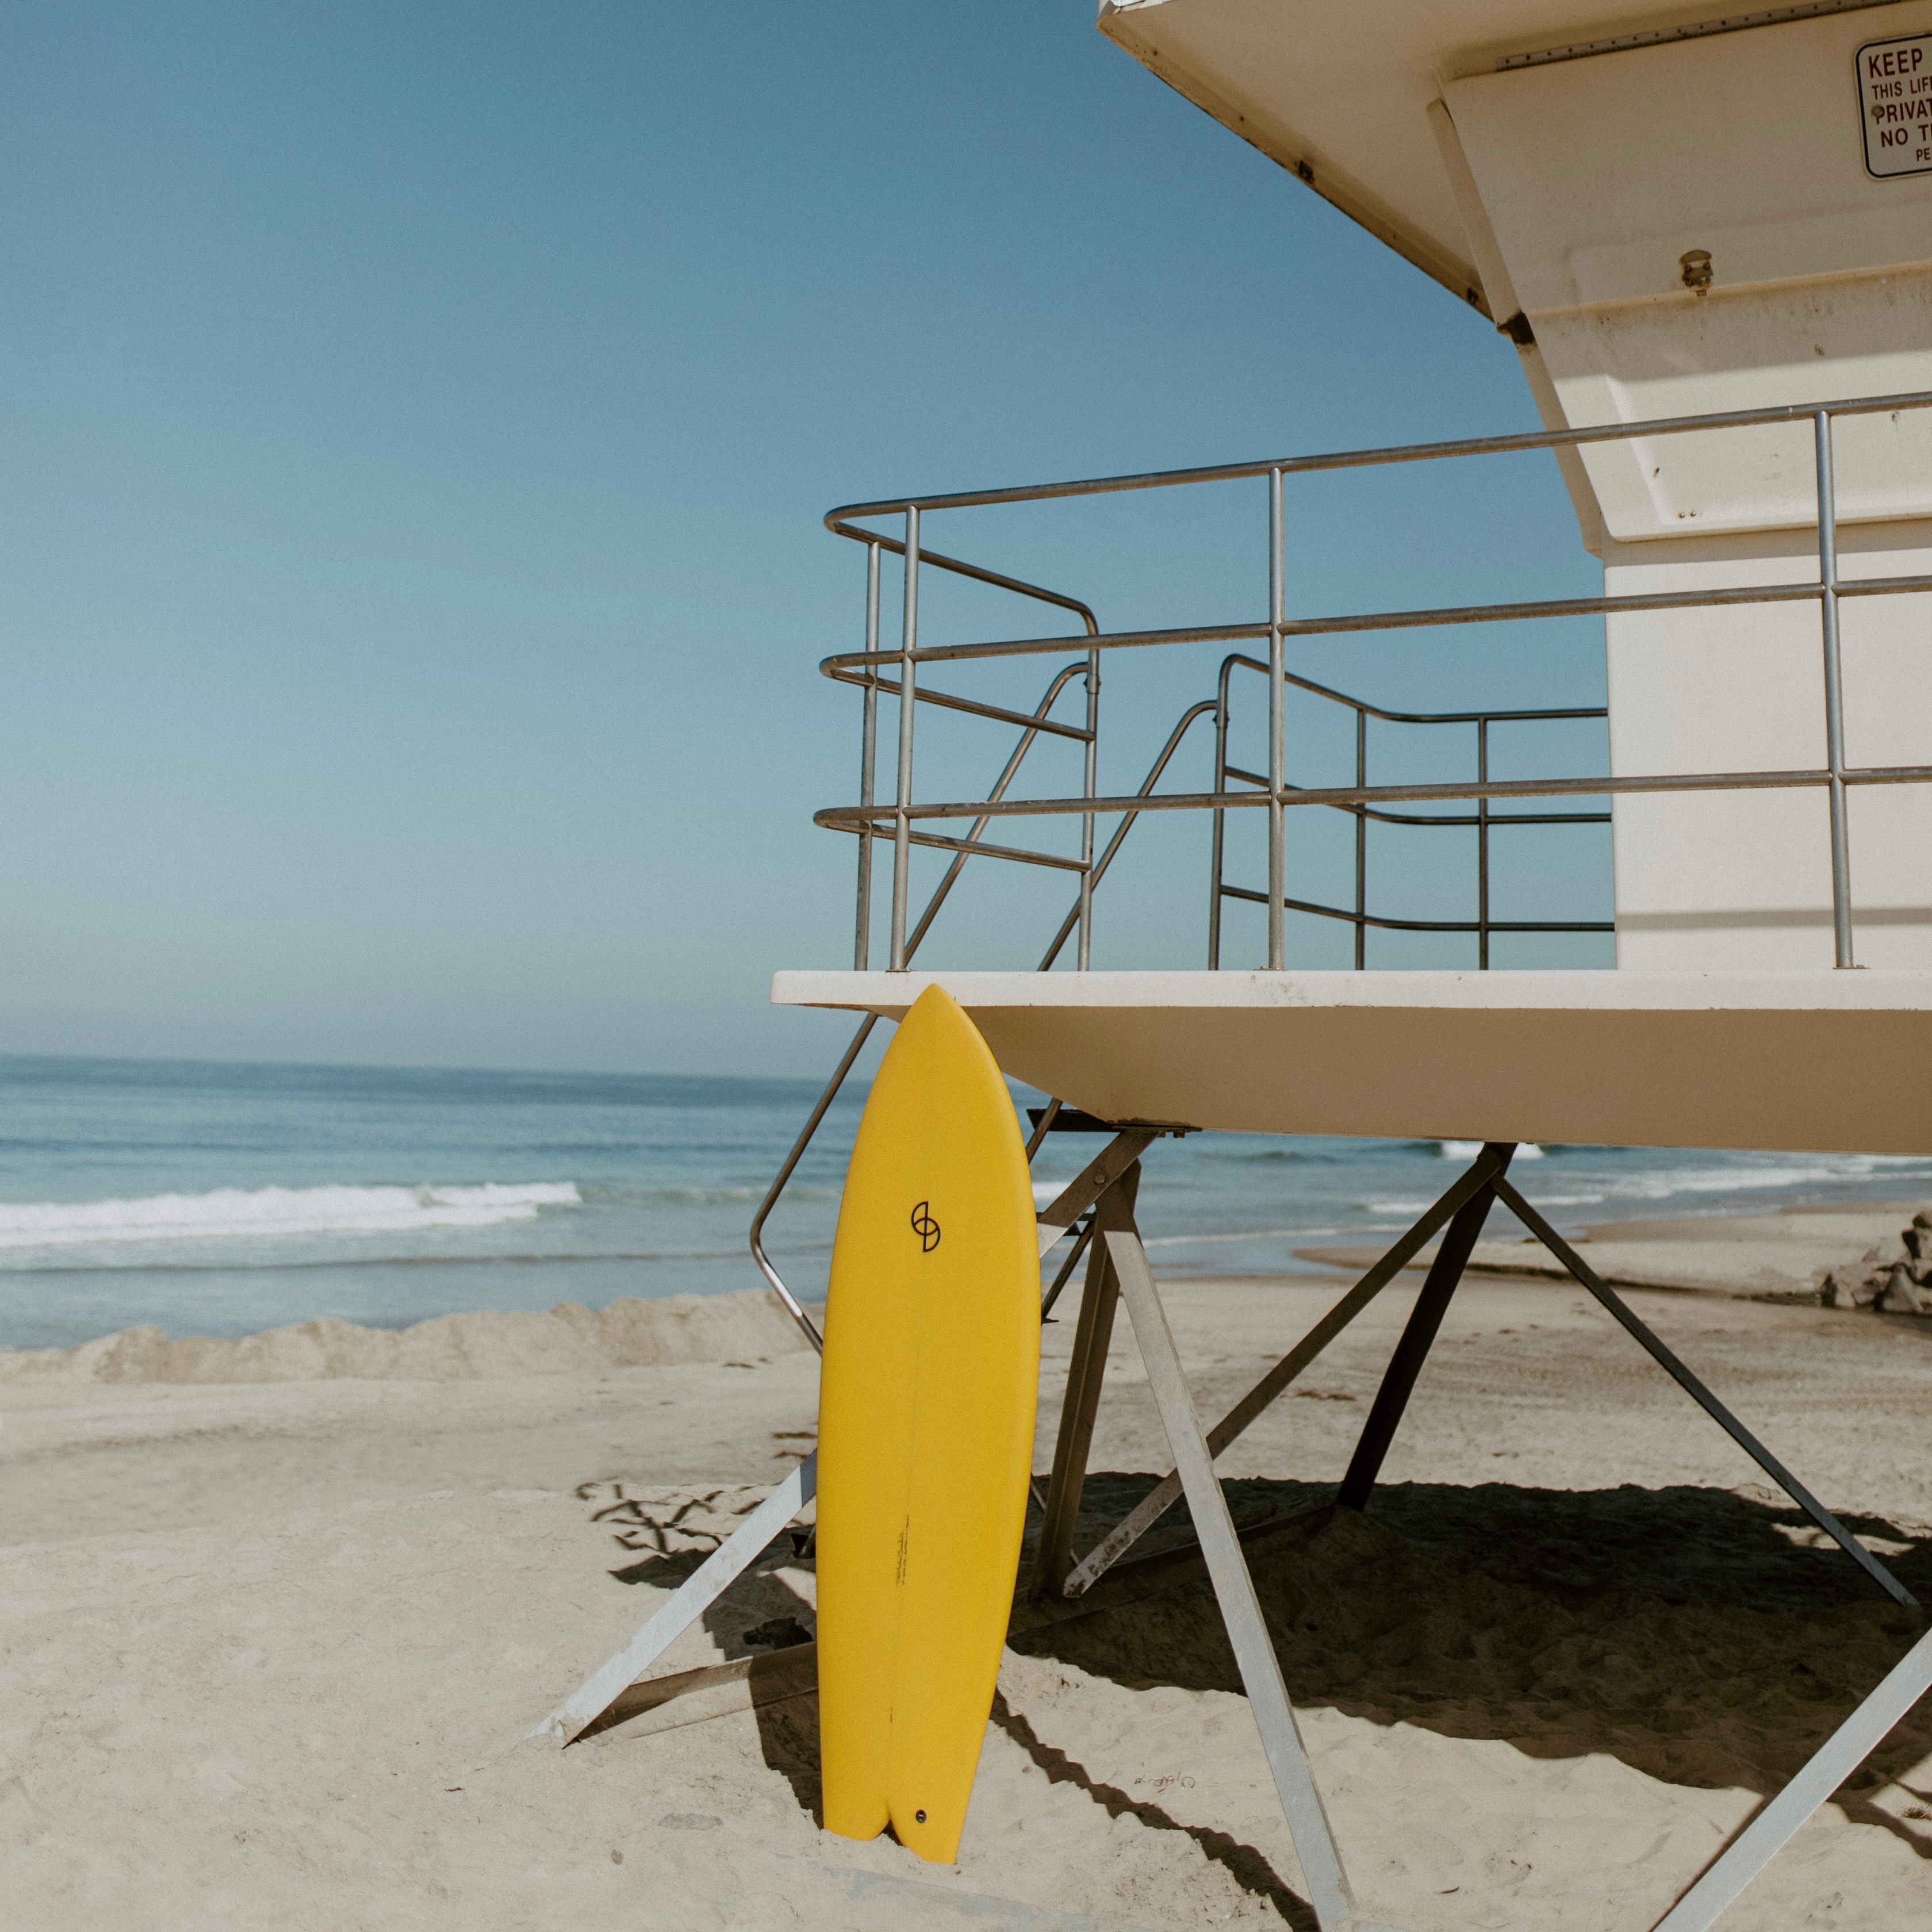 Seaesta Surf x Rob Machado Surfboards / Golden Smile / Boardshorts